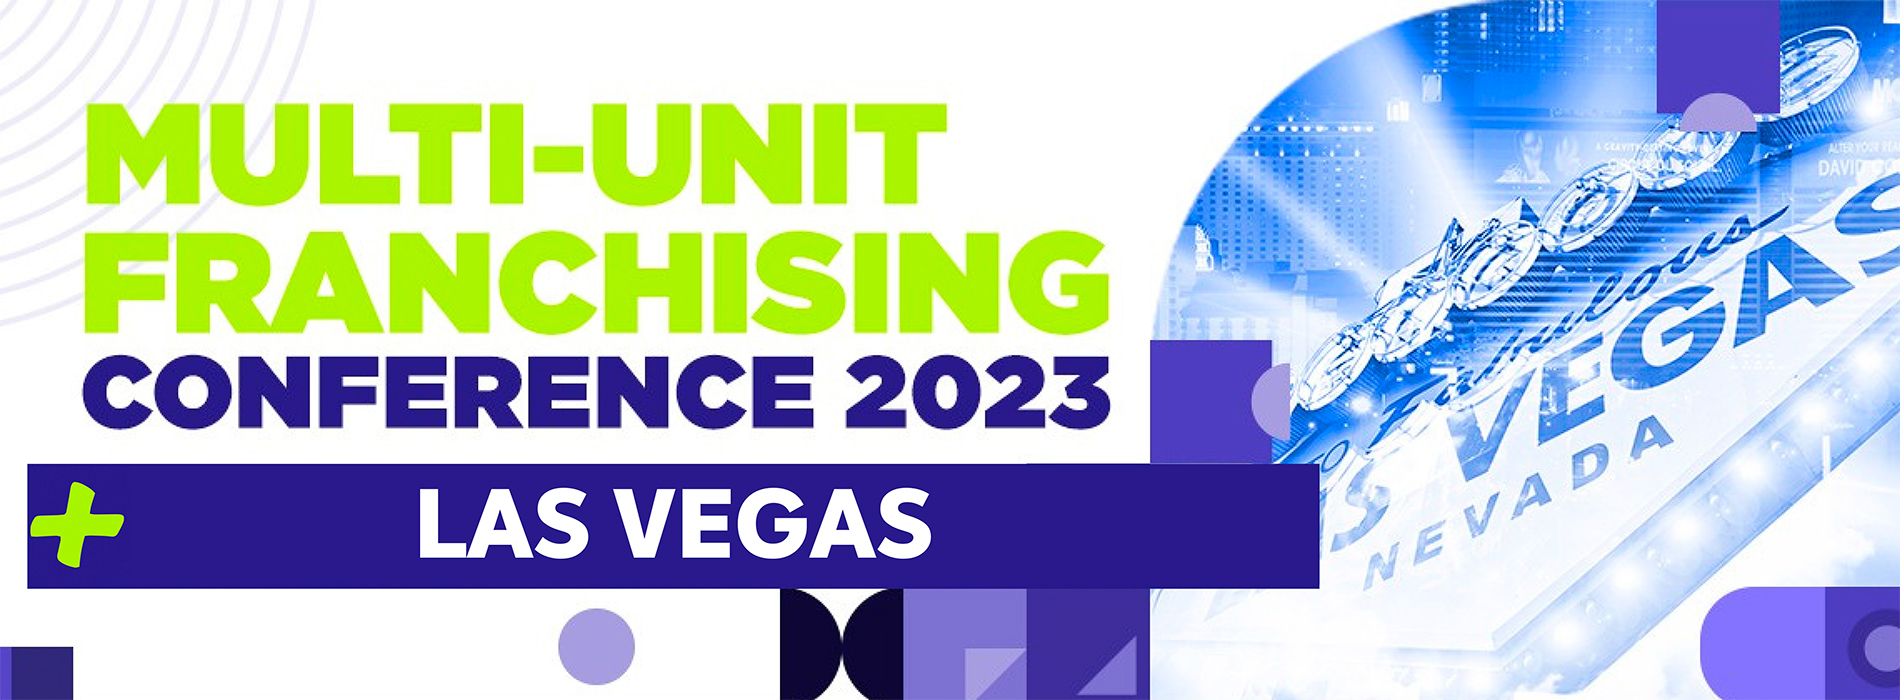 MultiUnit Franchising Conference Las Vegas Estados Unidos